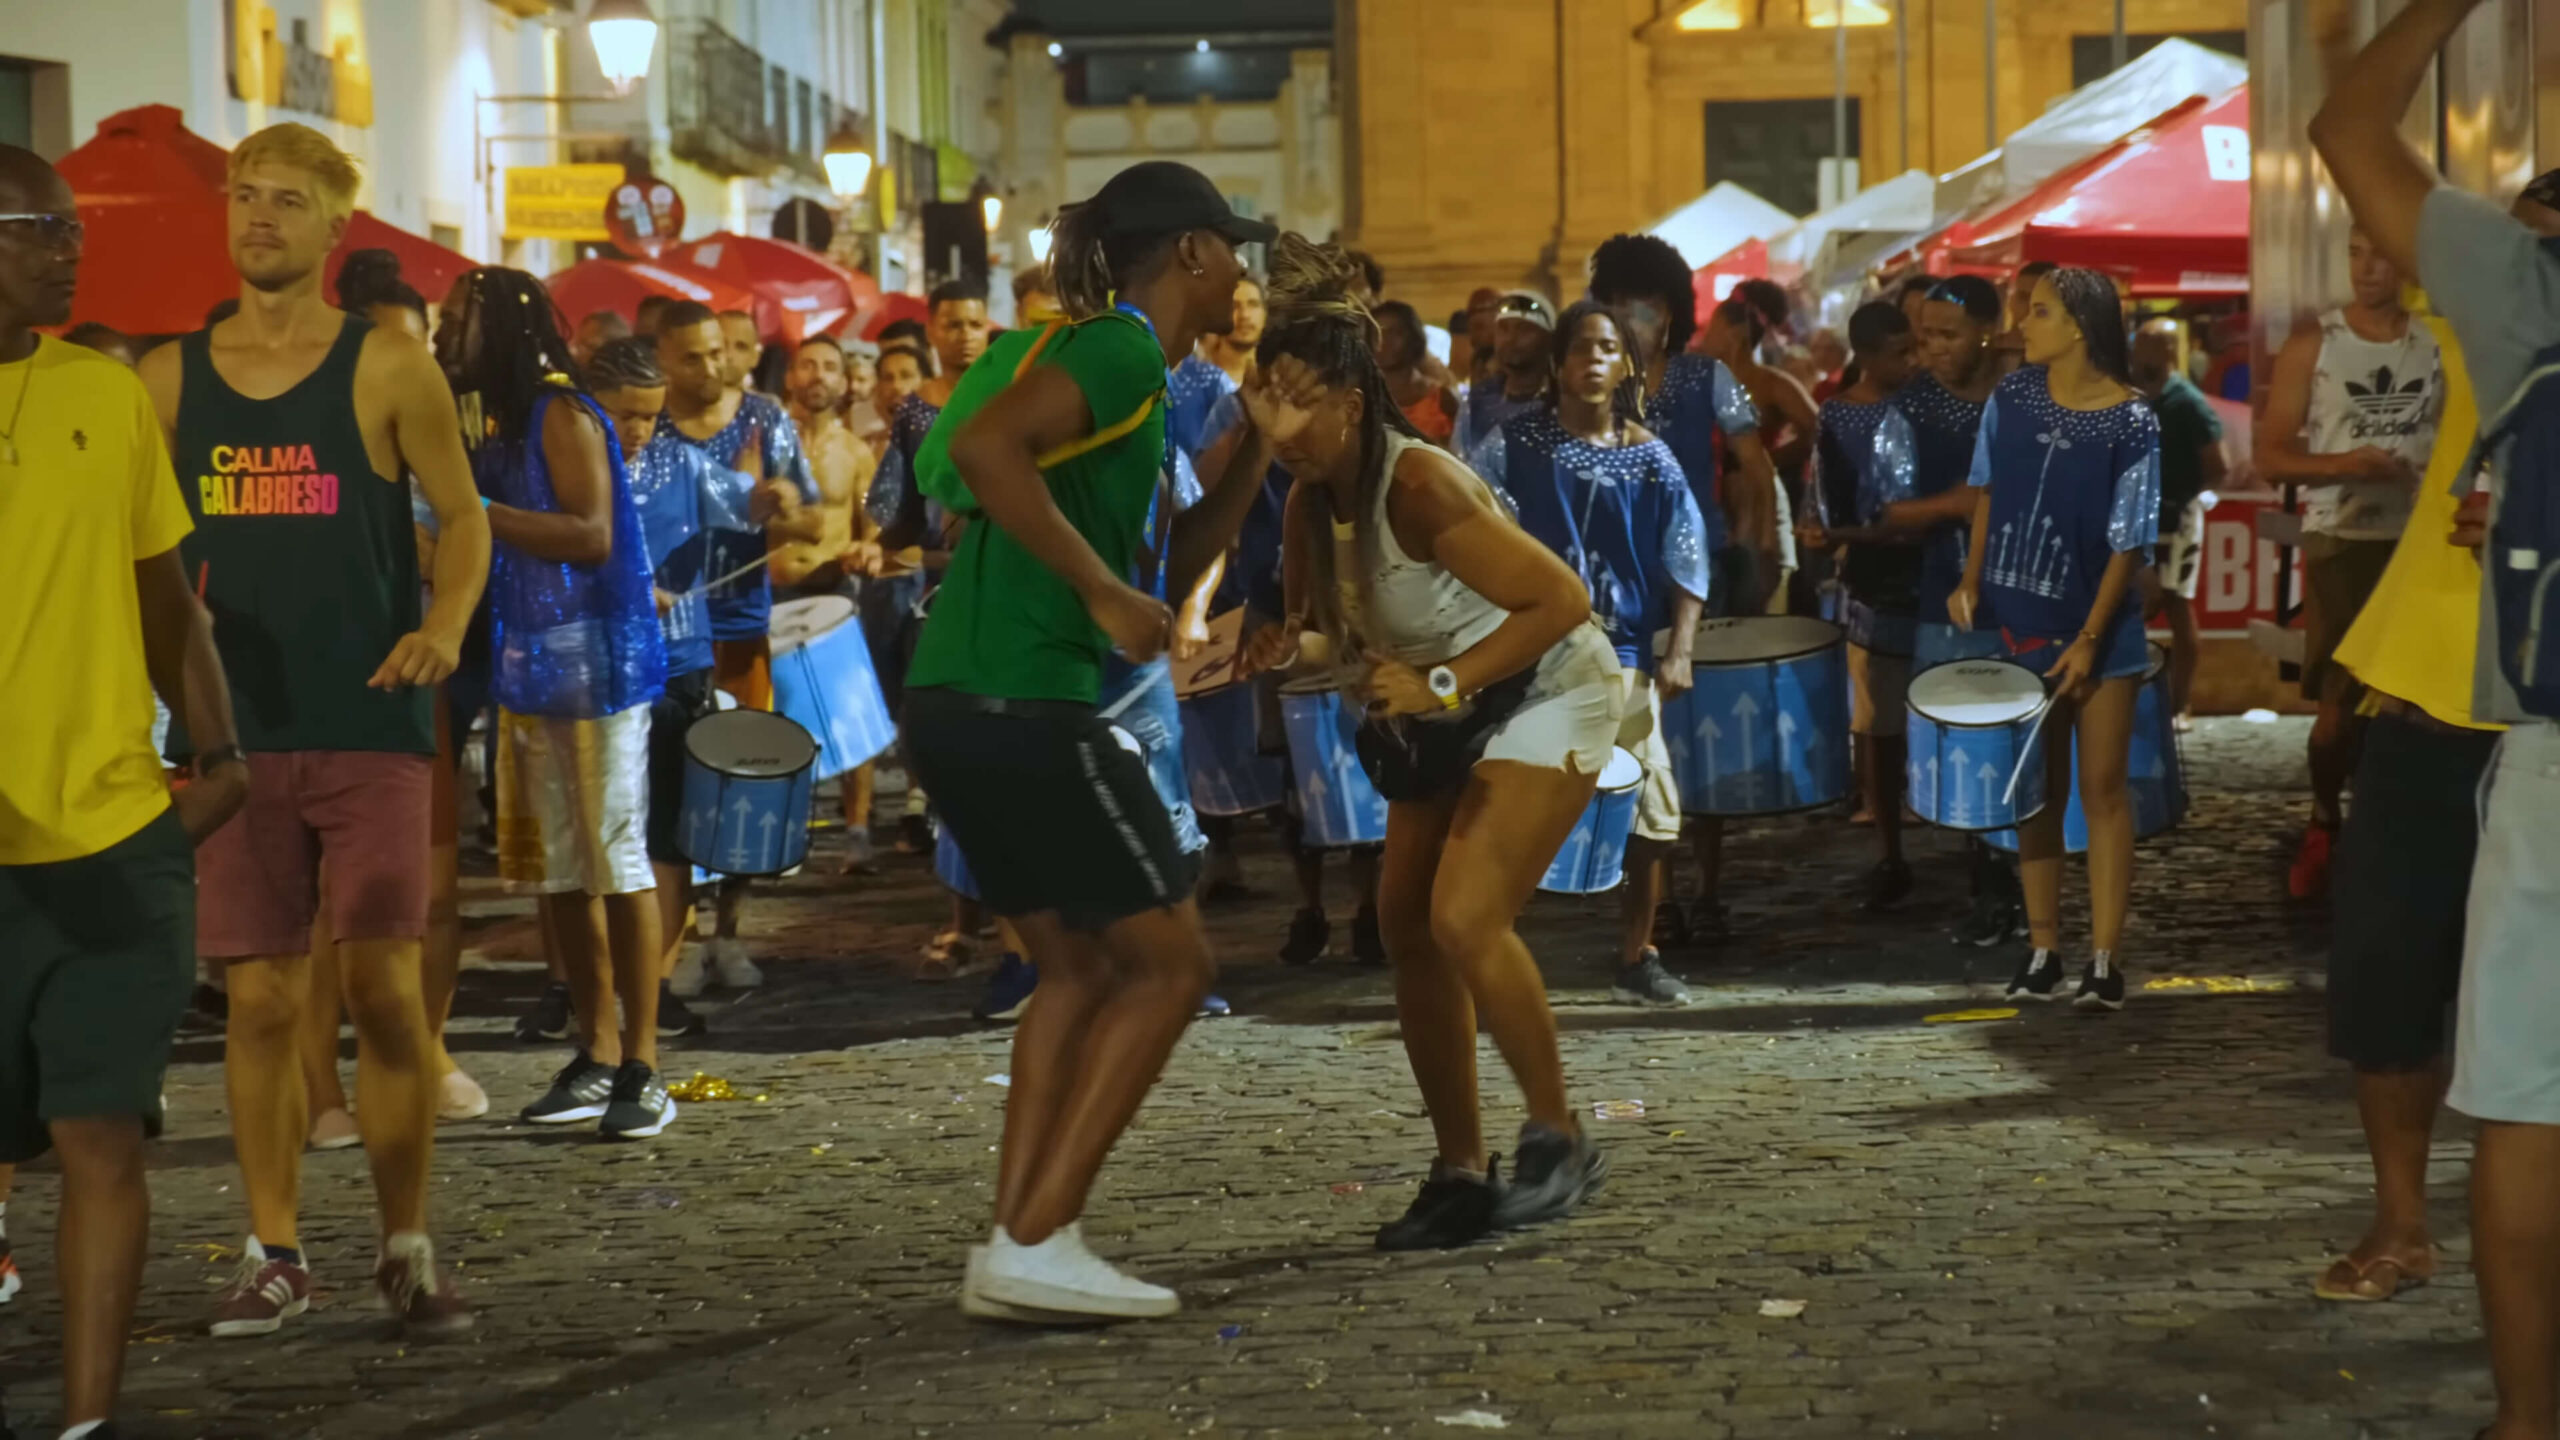 Salvador brazil - the dangers of neighbourhood streets